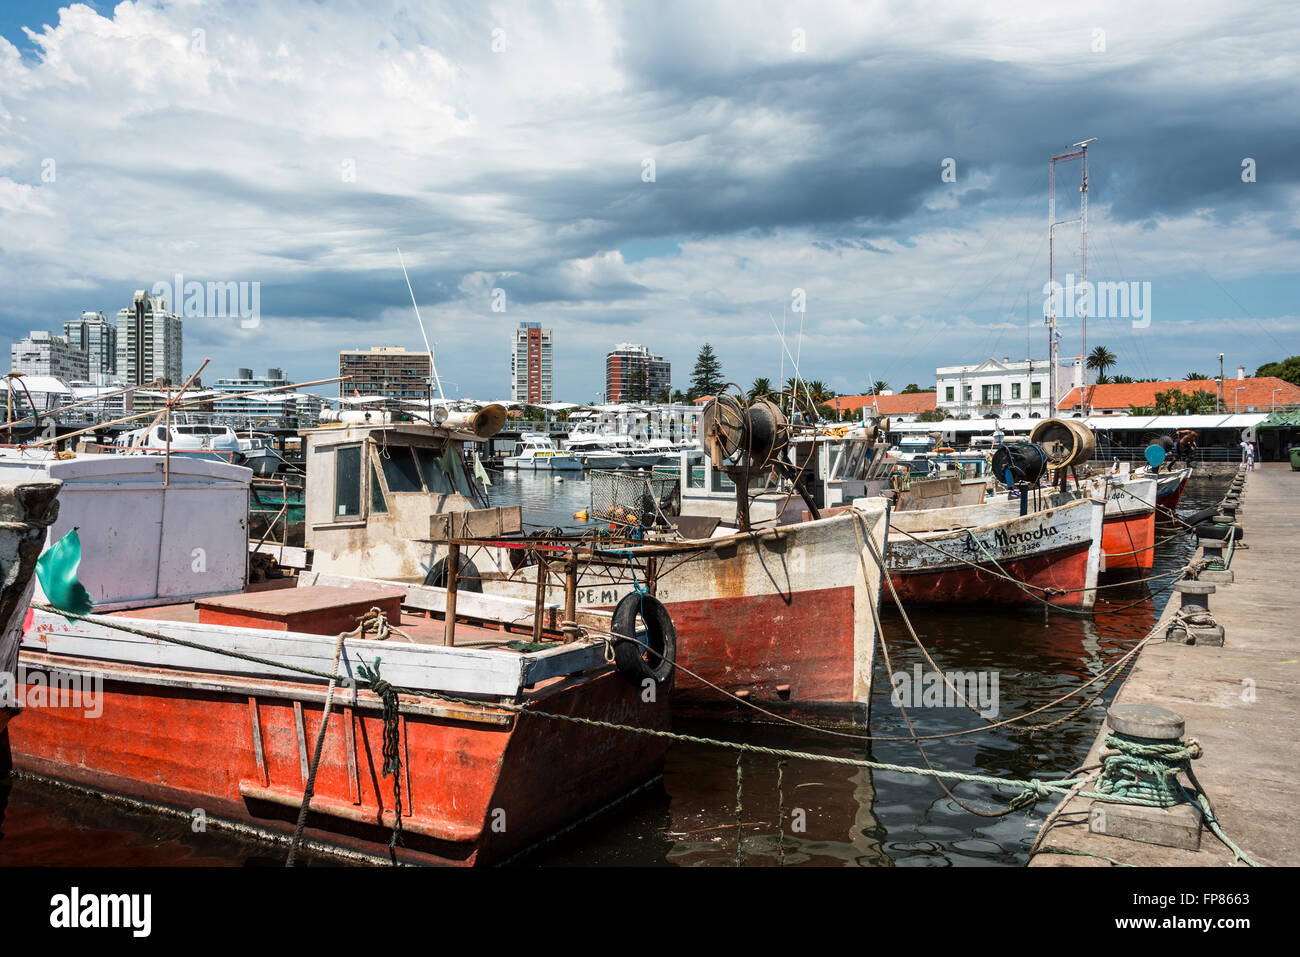 MALDONADO, febbraio 29, 2016 - Rosso classico barche da pesca ormeggiate nella parte anteriore del yacht del ricco di persone a Punta del Este har Foto Stock